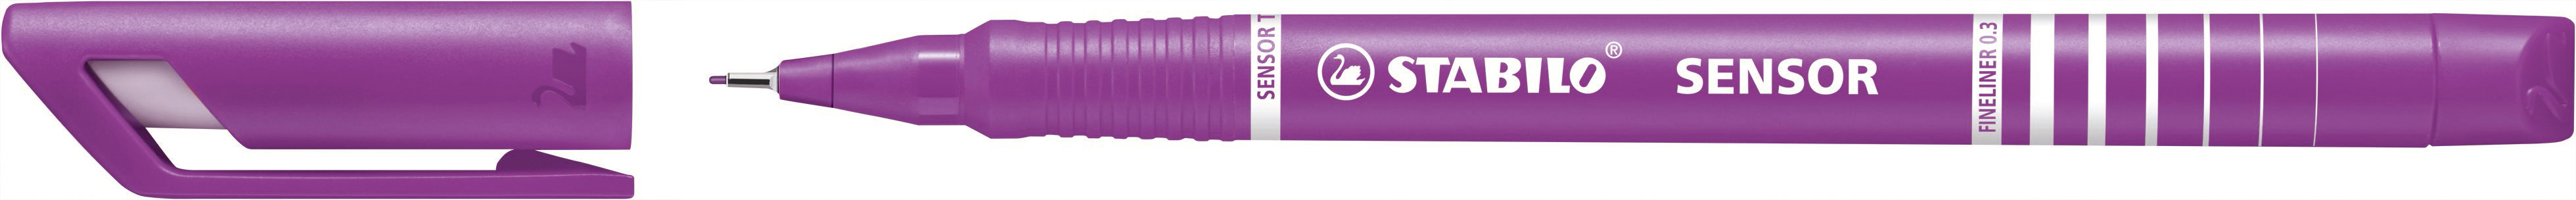 STABILO Stylo Fibre sensor 0,3mm(F) 189/58 lilas lilas